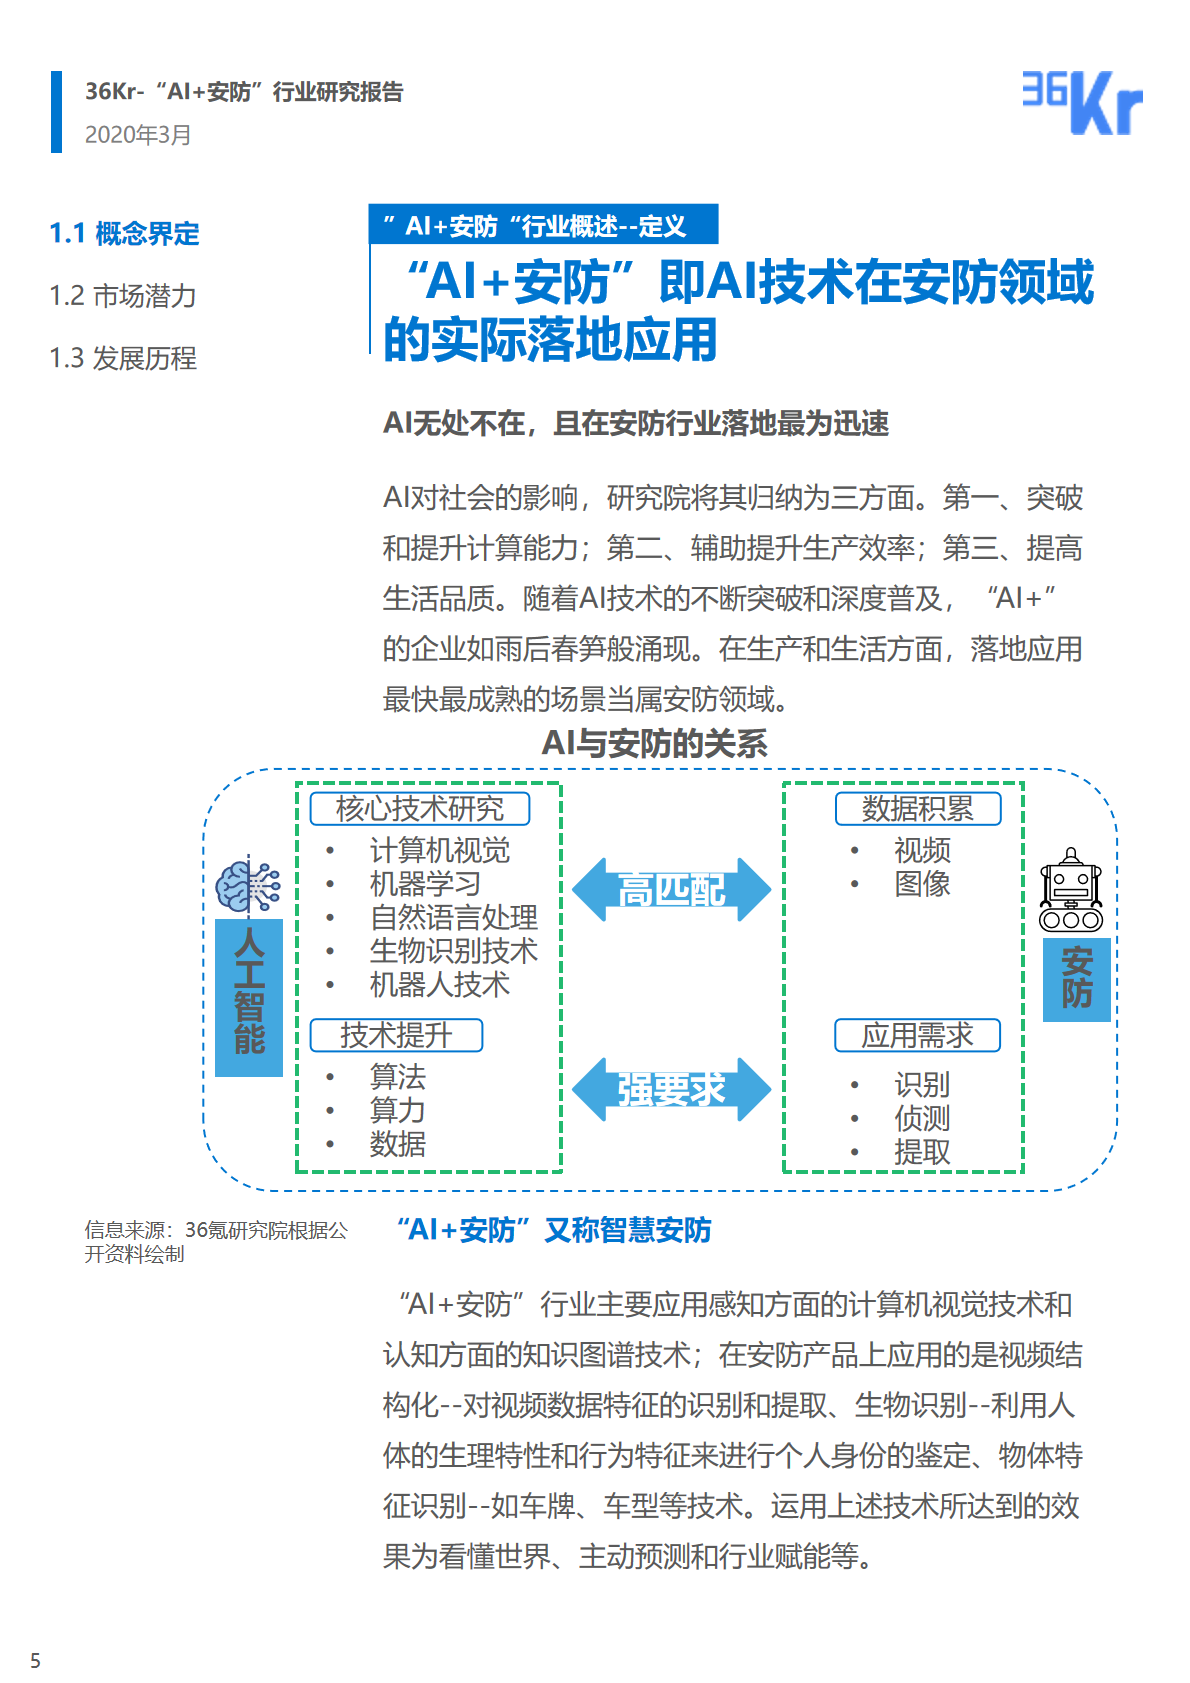 36氪研究院 | 2020年中国“AI+安防”行业研究报告